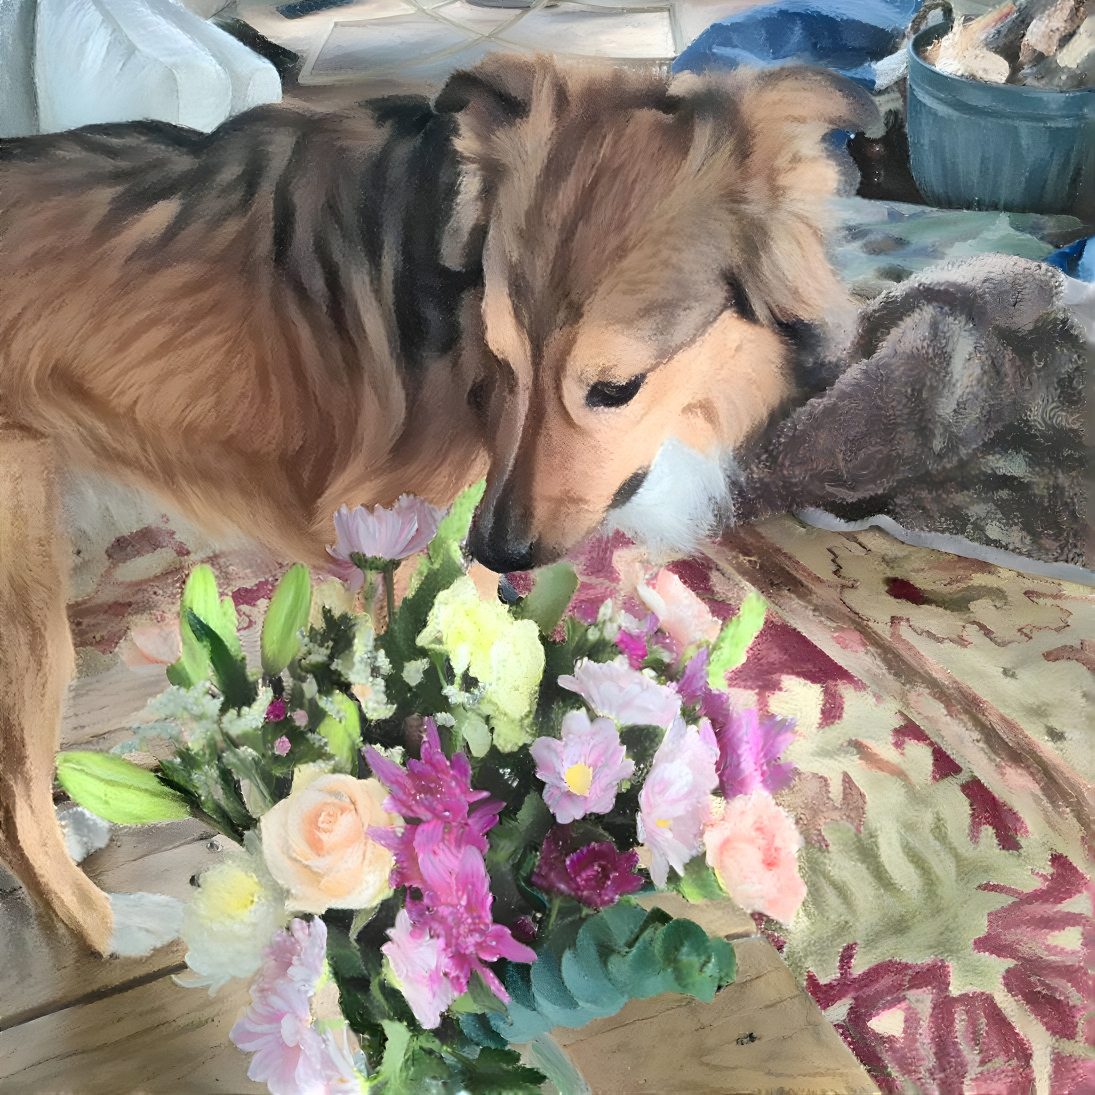 He loves flowers